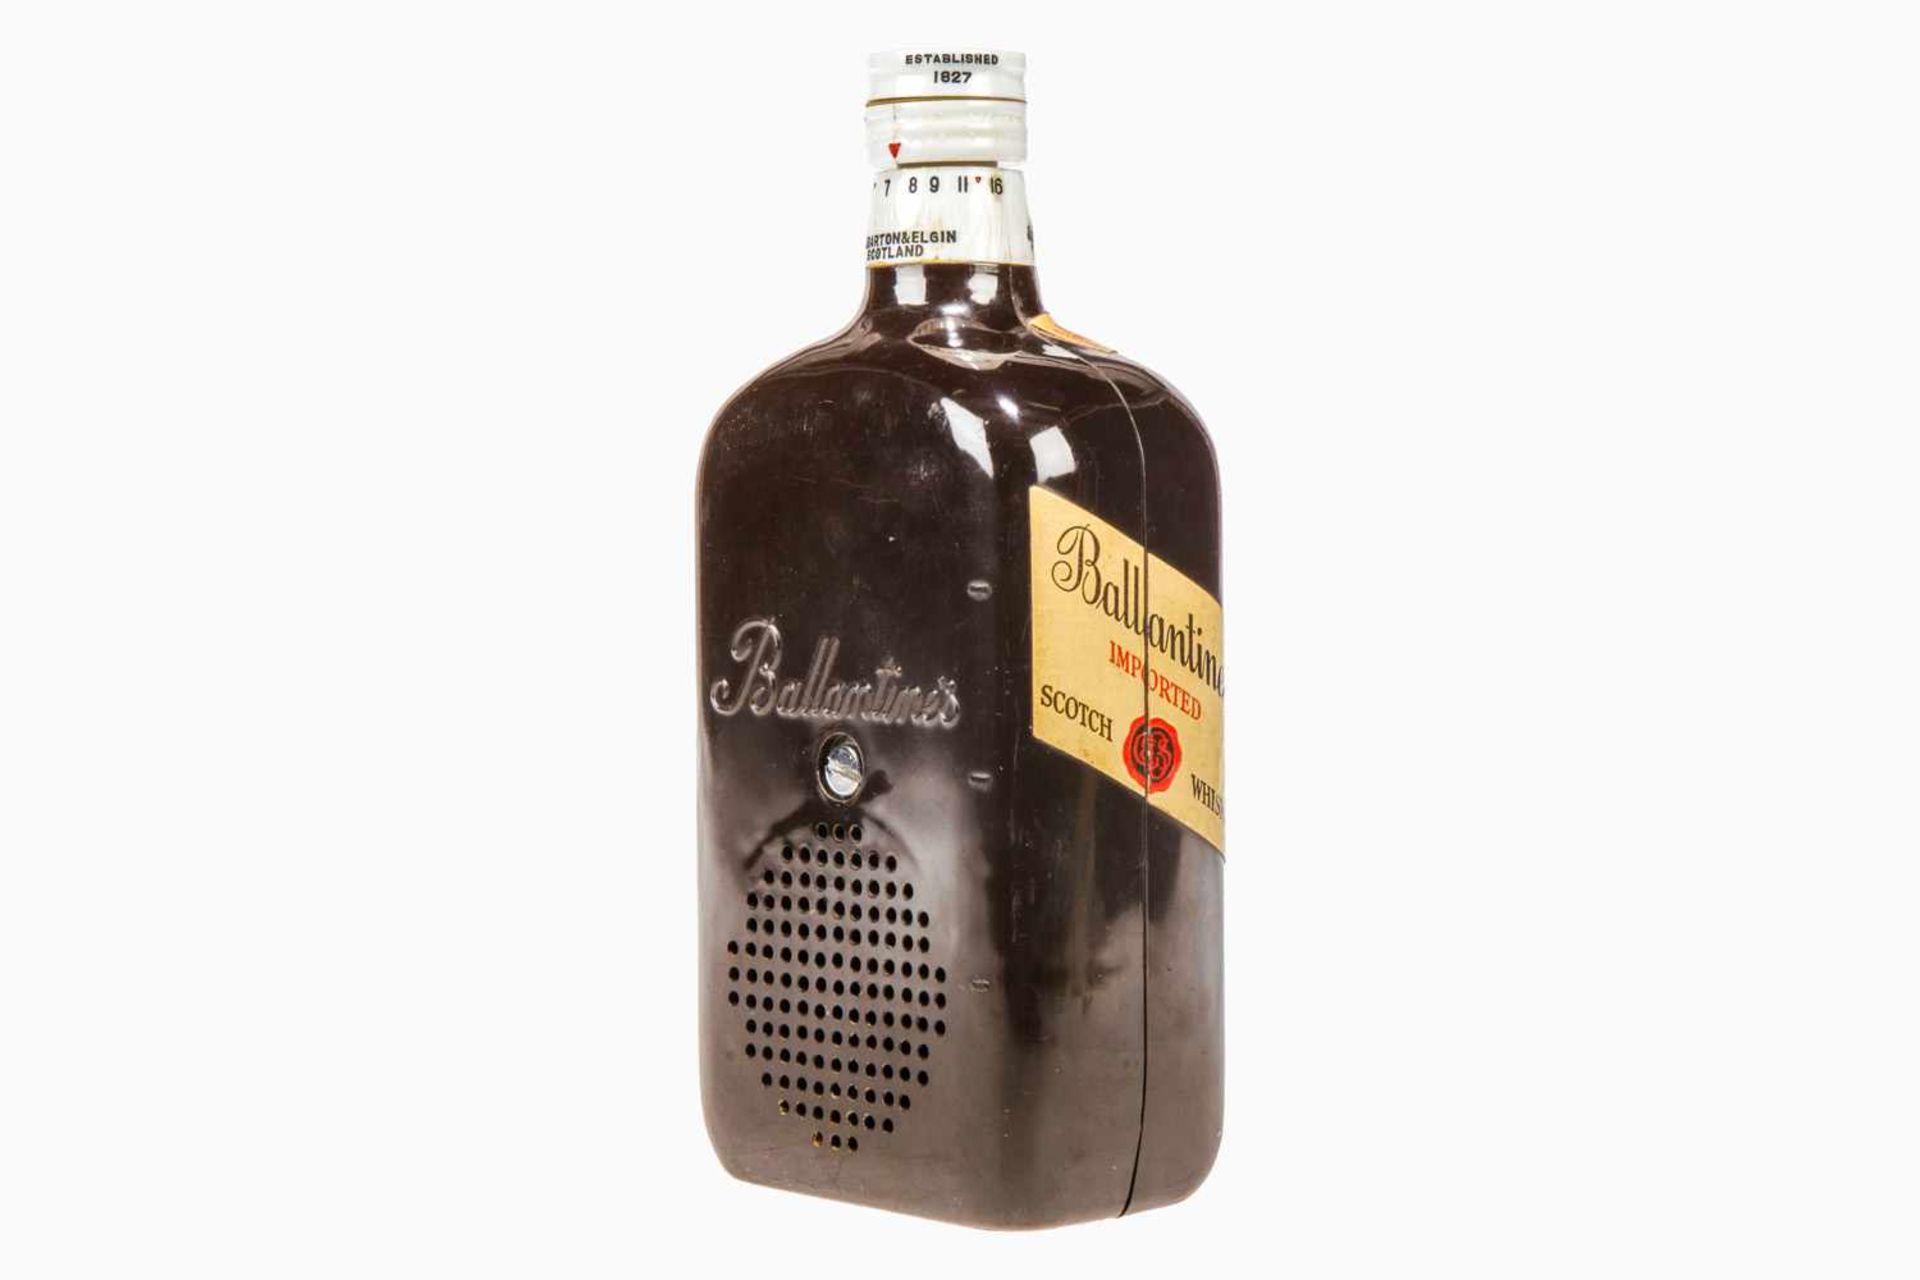 Werbe-Radio in Form einer Ballantines Whisky-Flasche, Höhe 23 cm- - -22.50 % buyer's premium on - Image 4 of 5